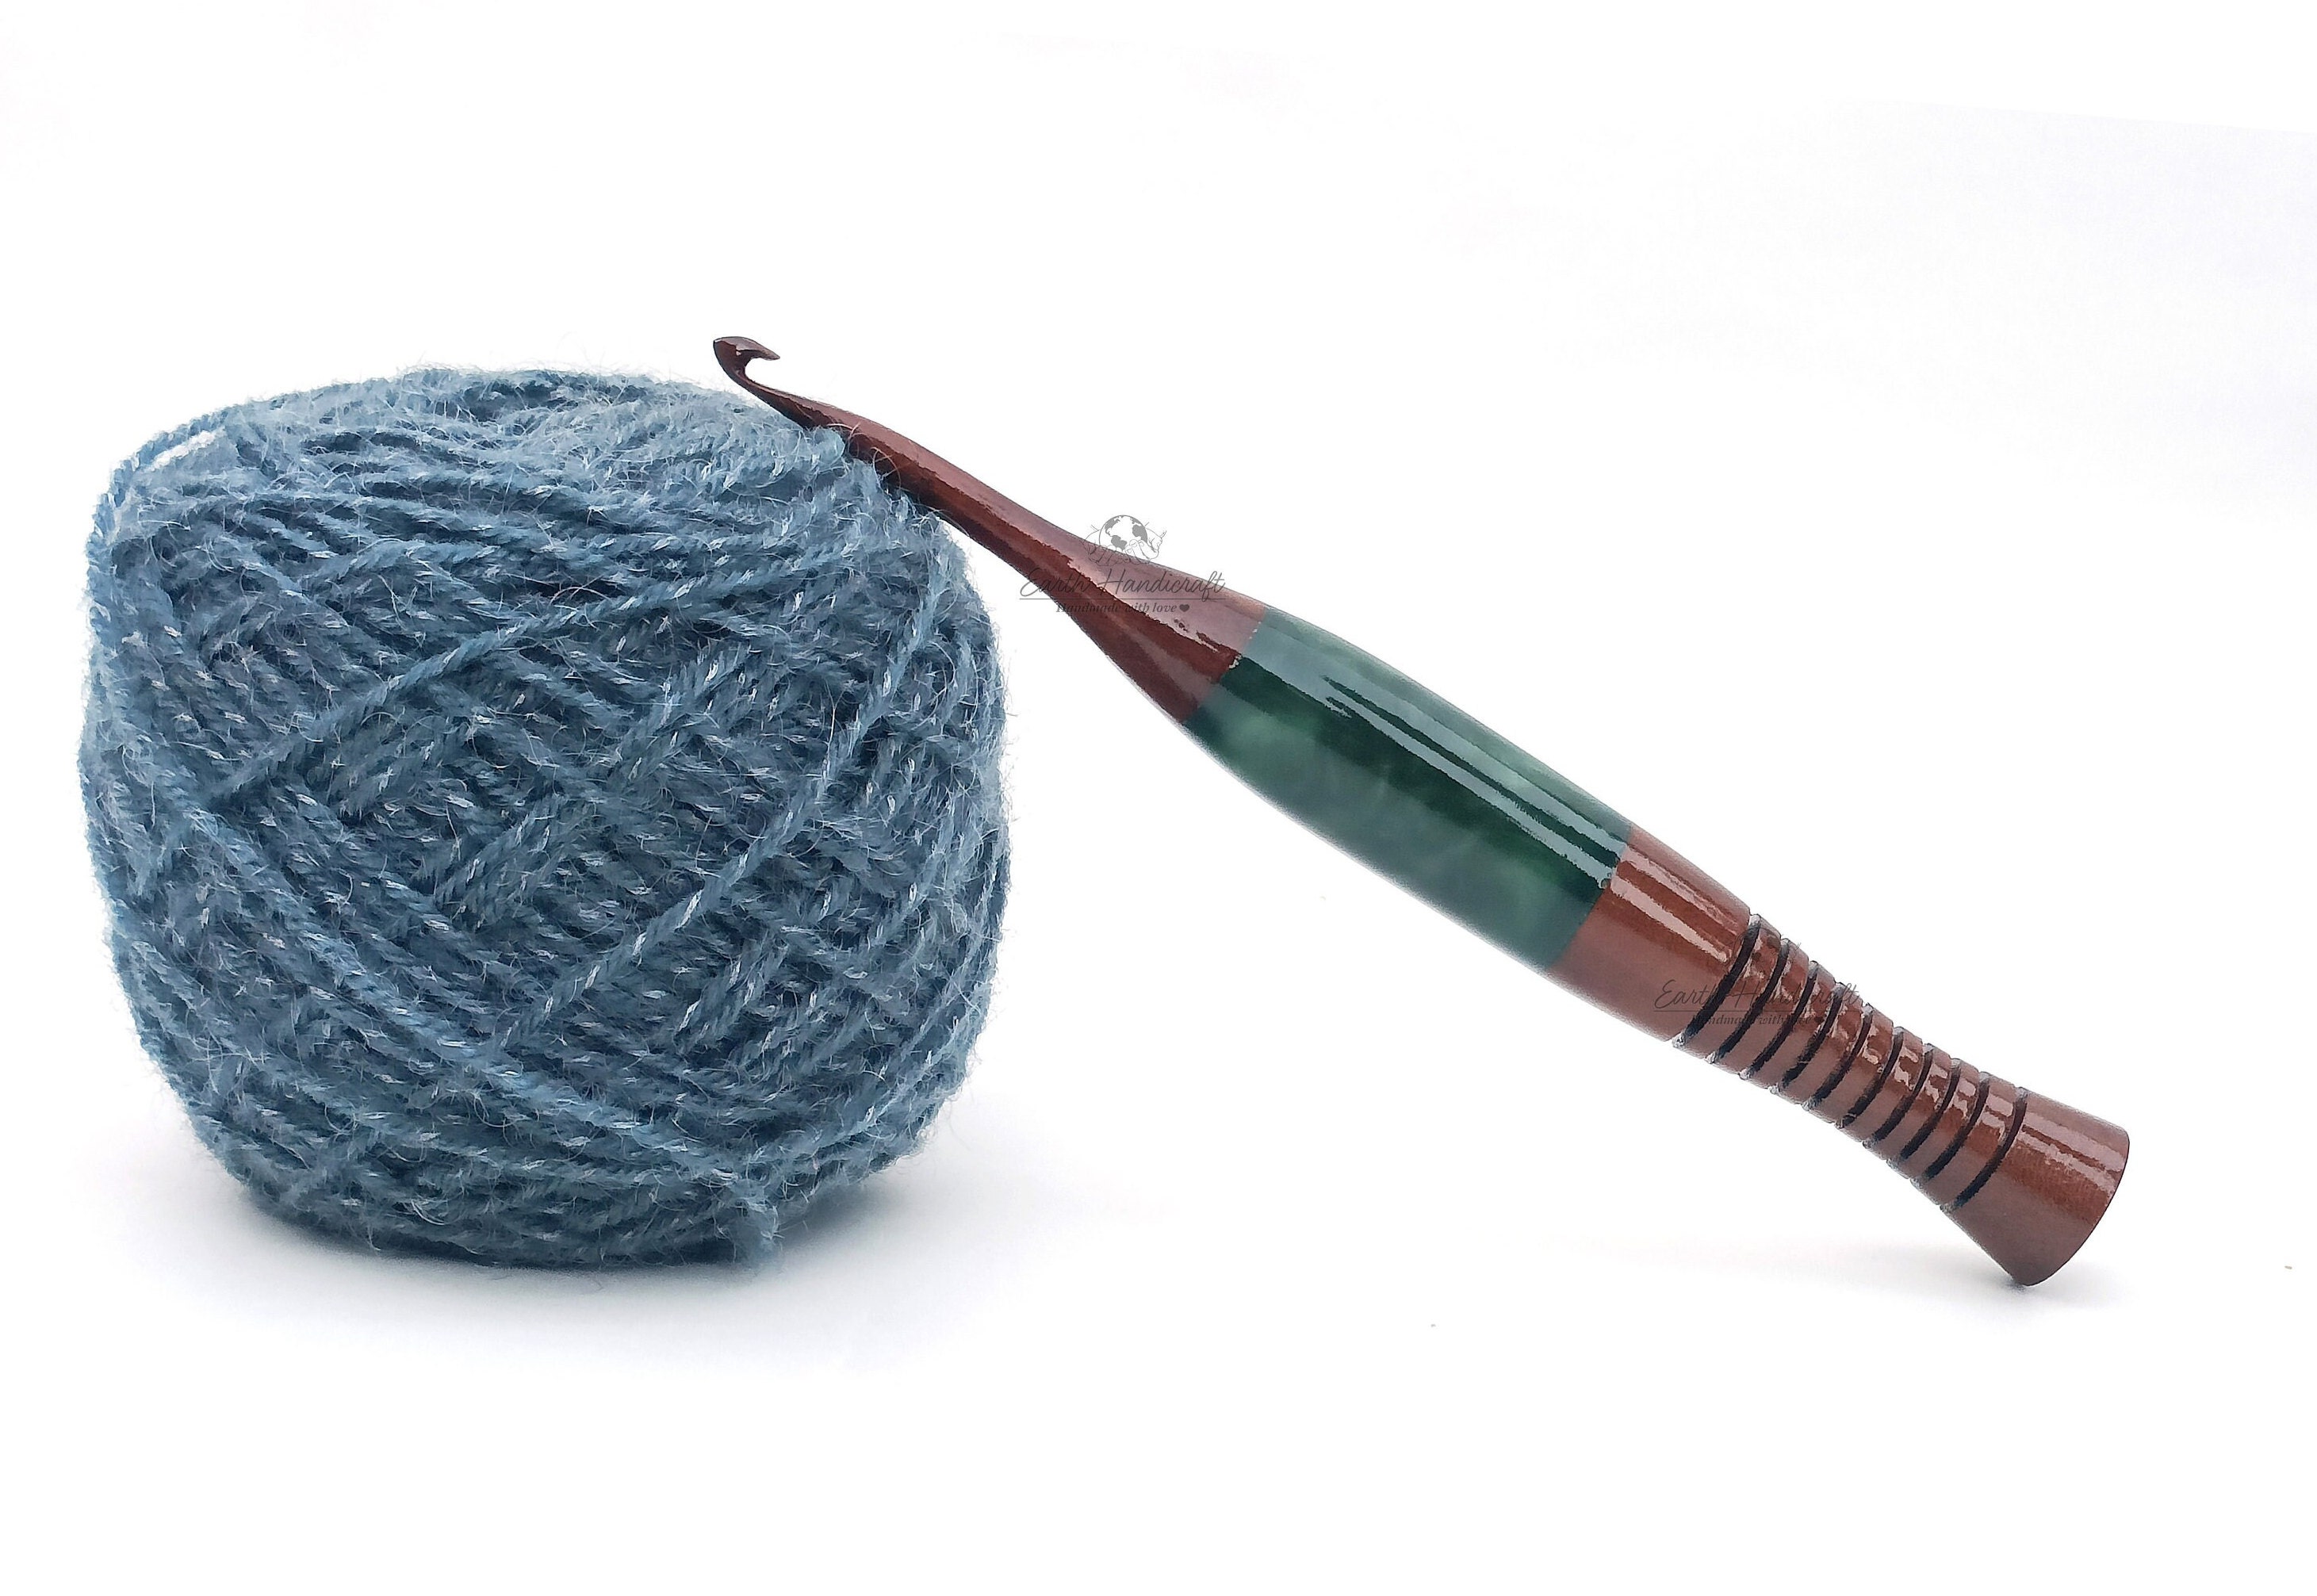 Handmade Wooden Crochet Hook Knitting Needle Crochet Hooks for